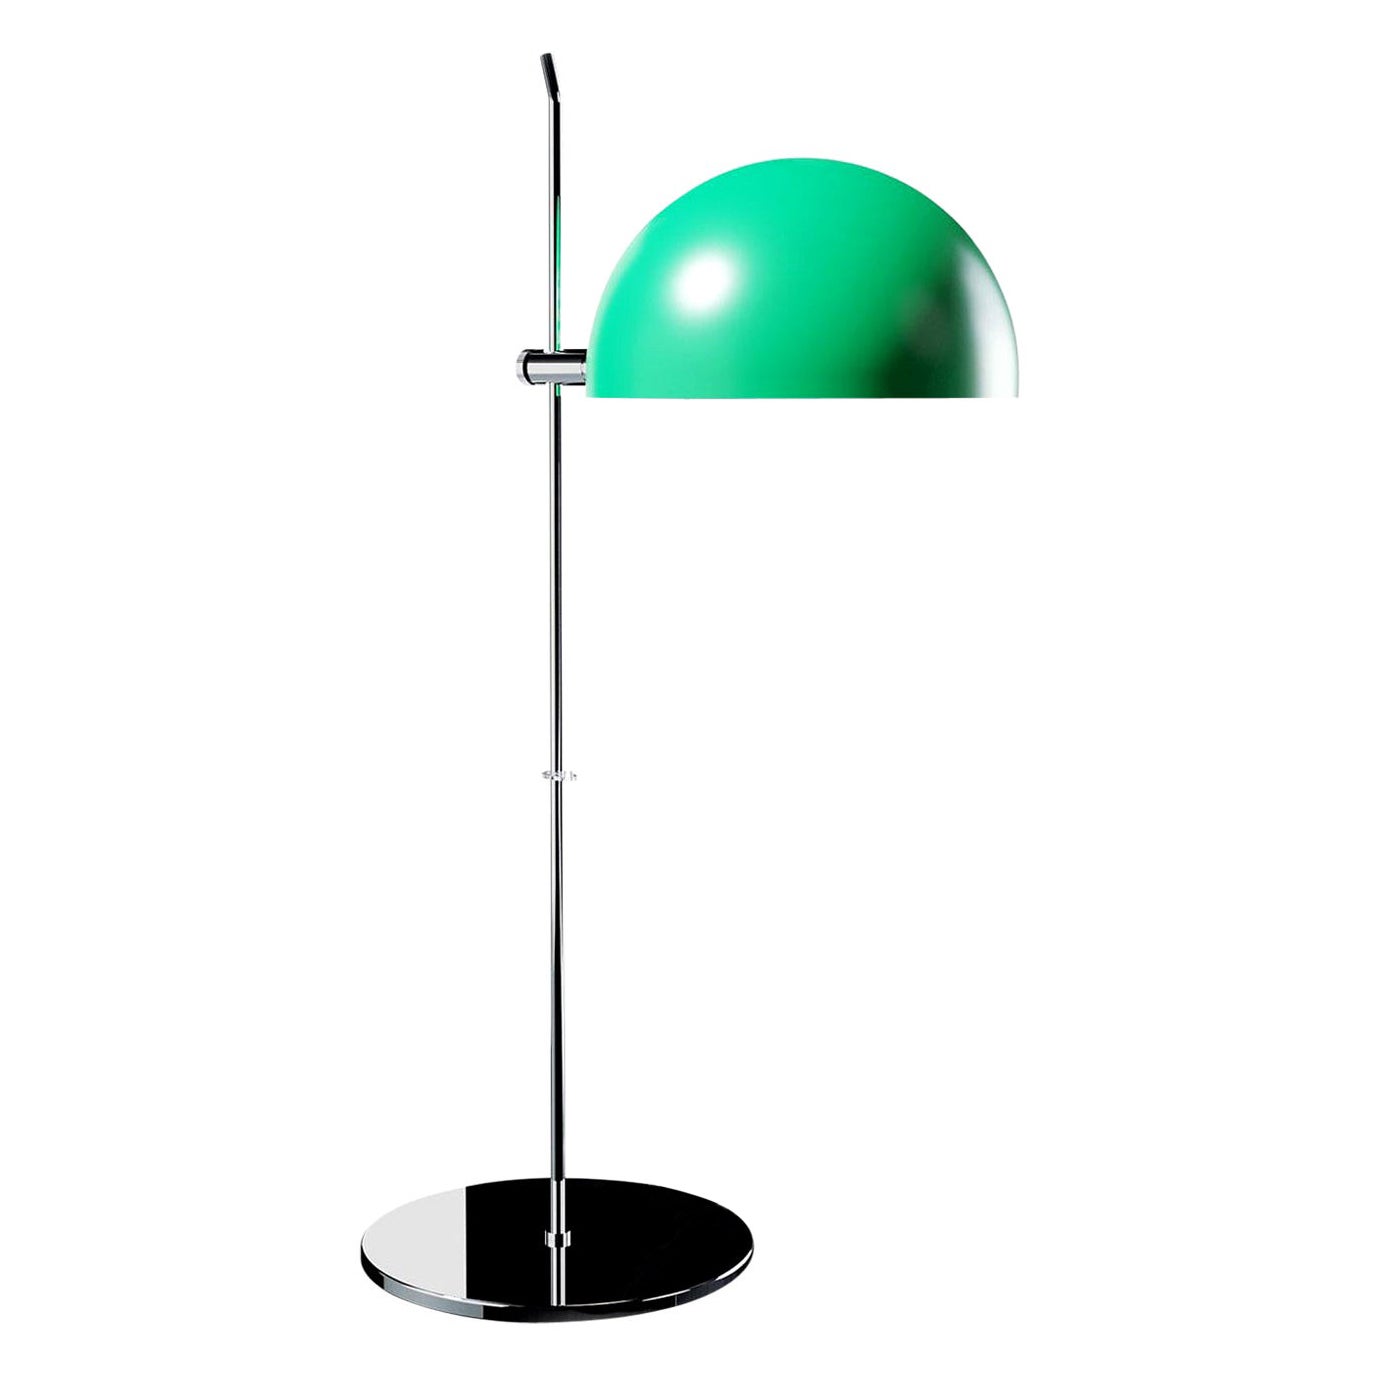 Alain Richard 'A21' Desk Lamp in Green for Disderot For Sale